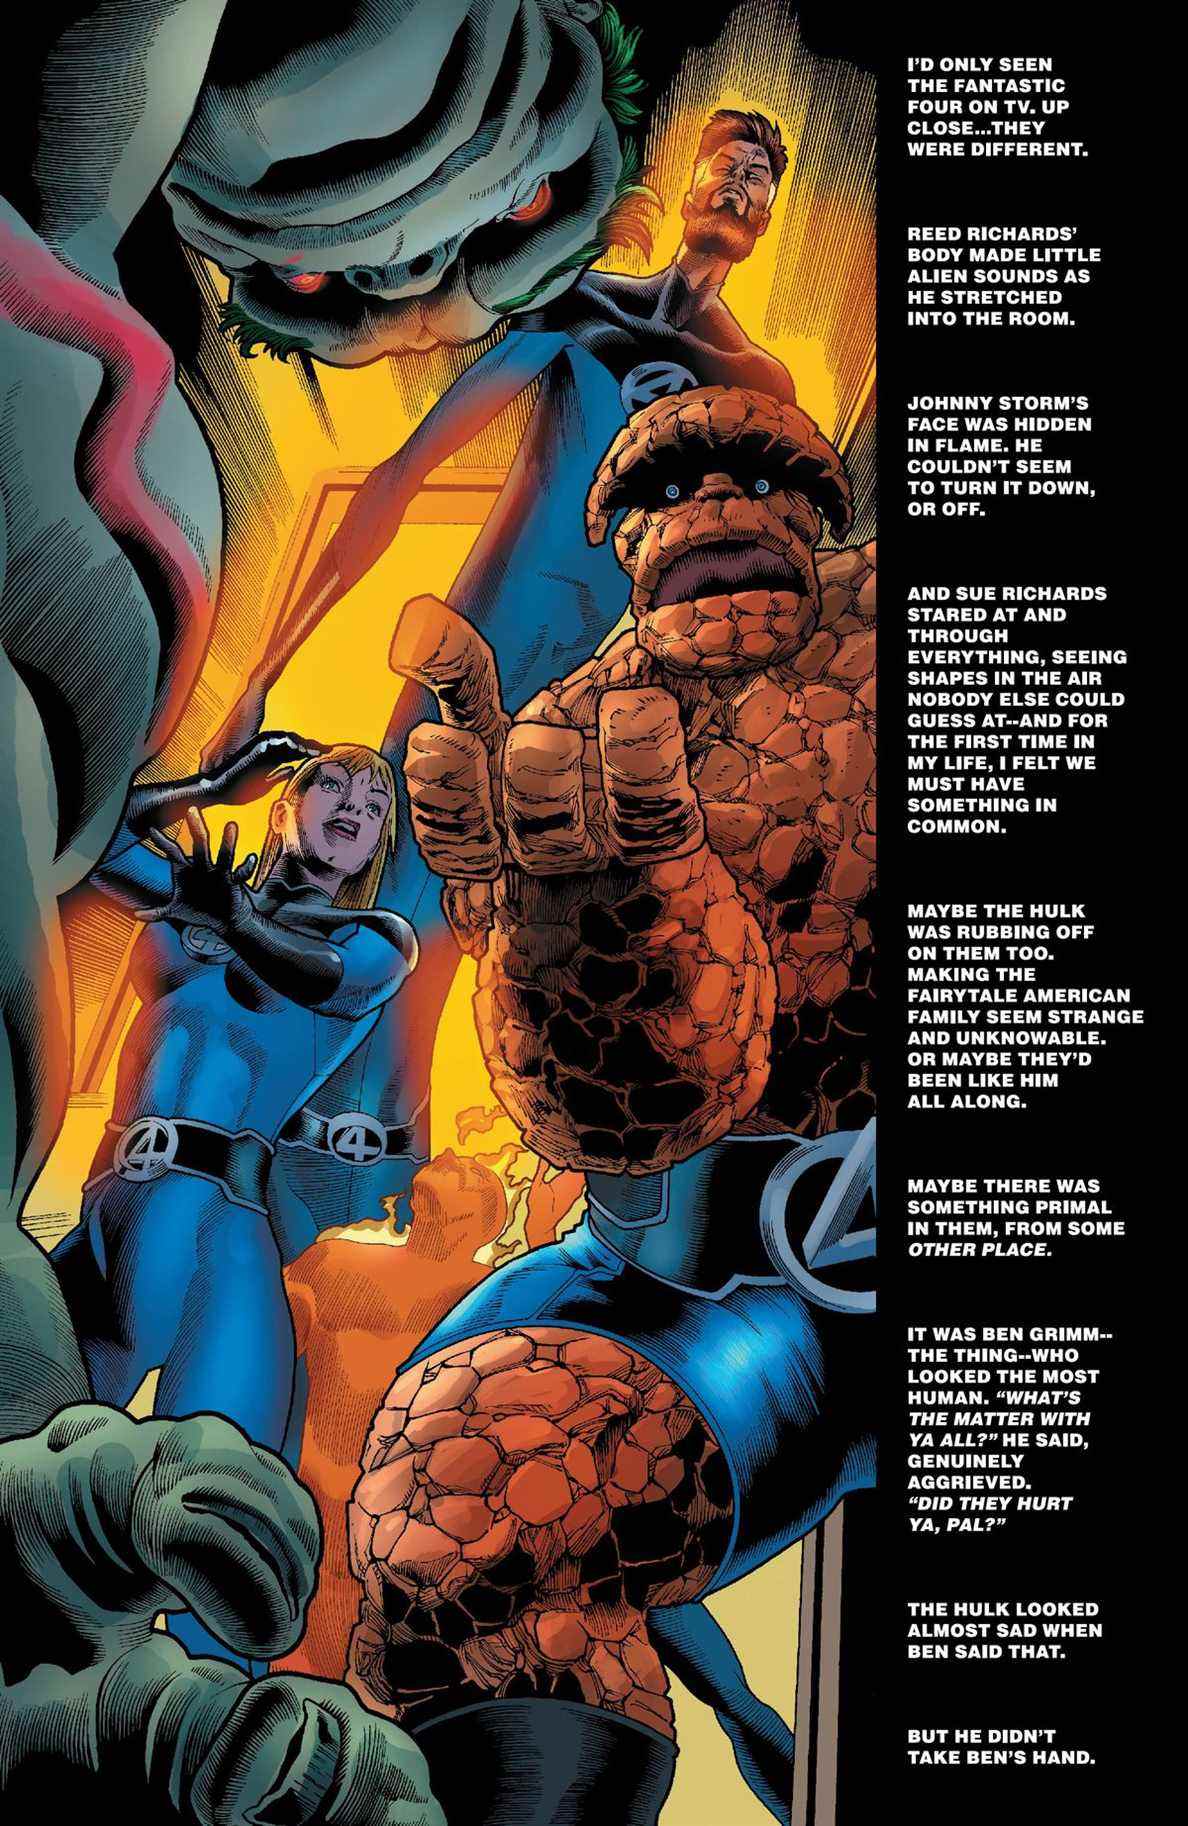 Les Quatre Fantastiques franchissent une porte incandescente et la Chose tend la main à Hulk, frappé, en disant « Est-ce qu'ils t'ont blessé, mon pote ? »  Les mots à droite décrivent leur apparition surnaturelle dans Immortal Hulk # 49 (2021). 